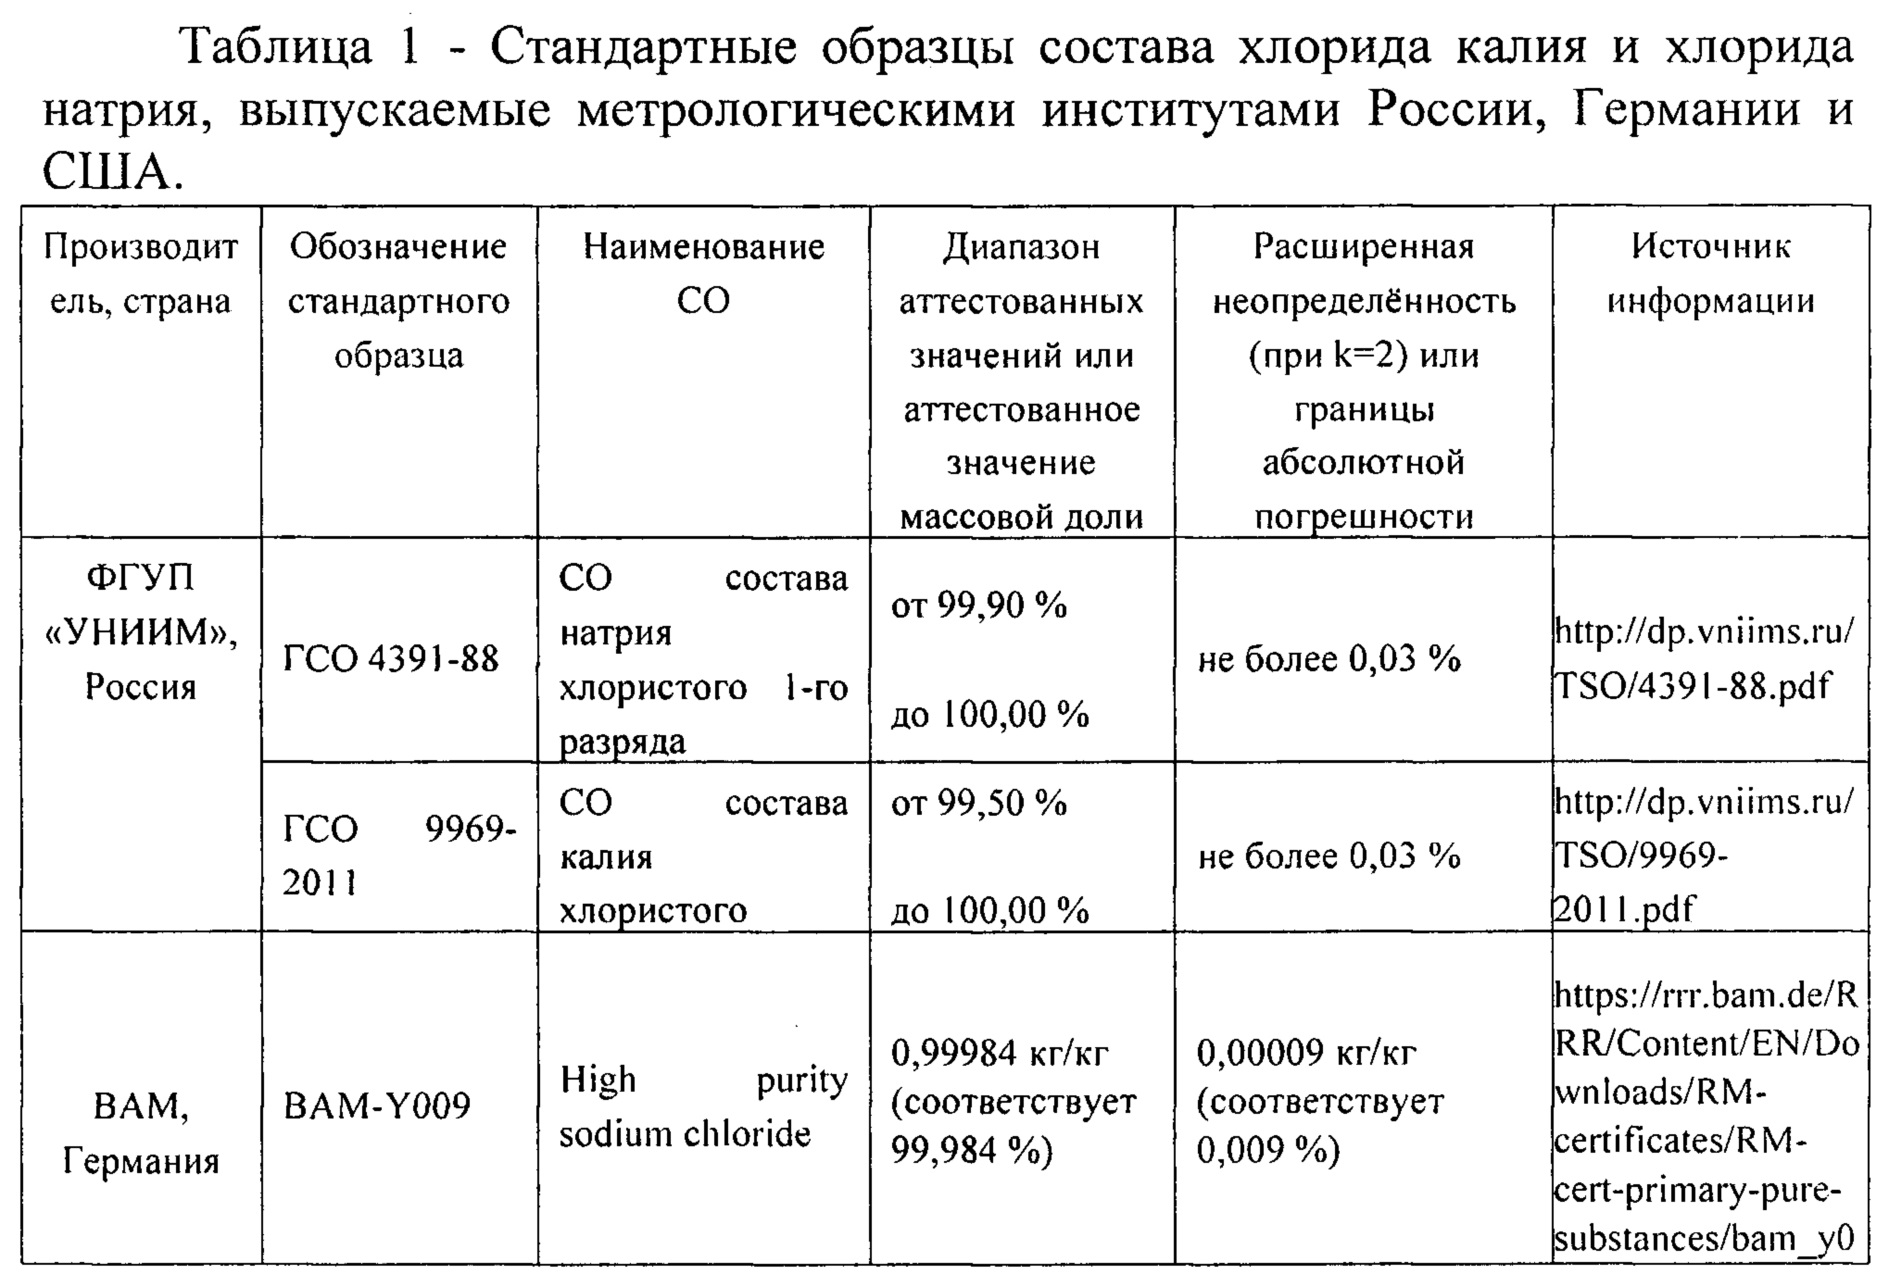 Характеристика калия период. Сравнительная характеристика методов определения натрия и калия.. ГСО 4391-88 натрий хлористый. Стандартный образец это. Методы определения натрия и калия.